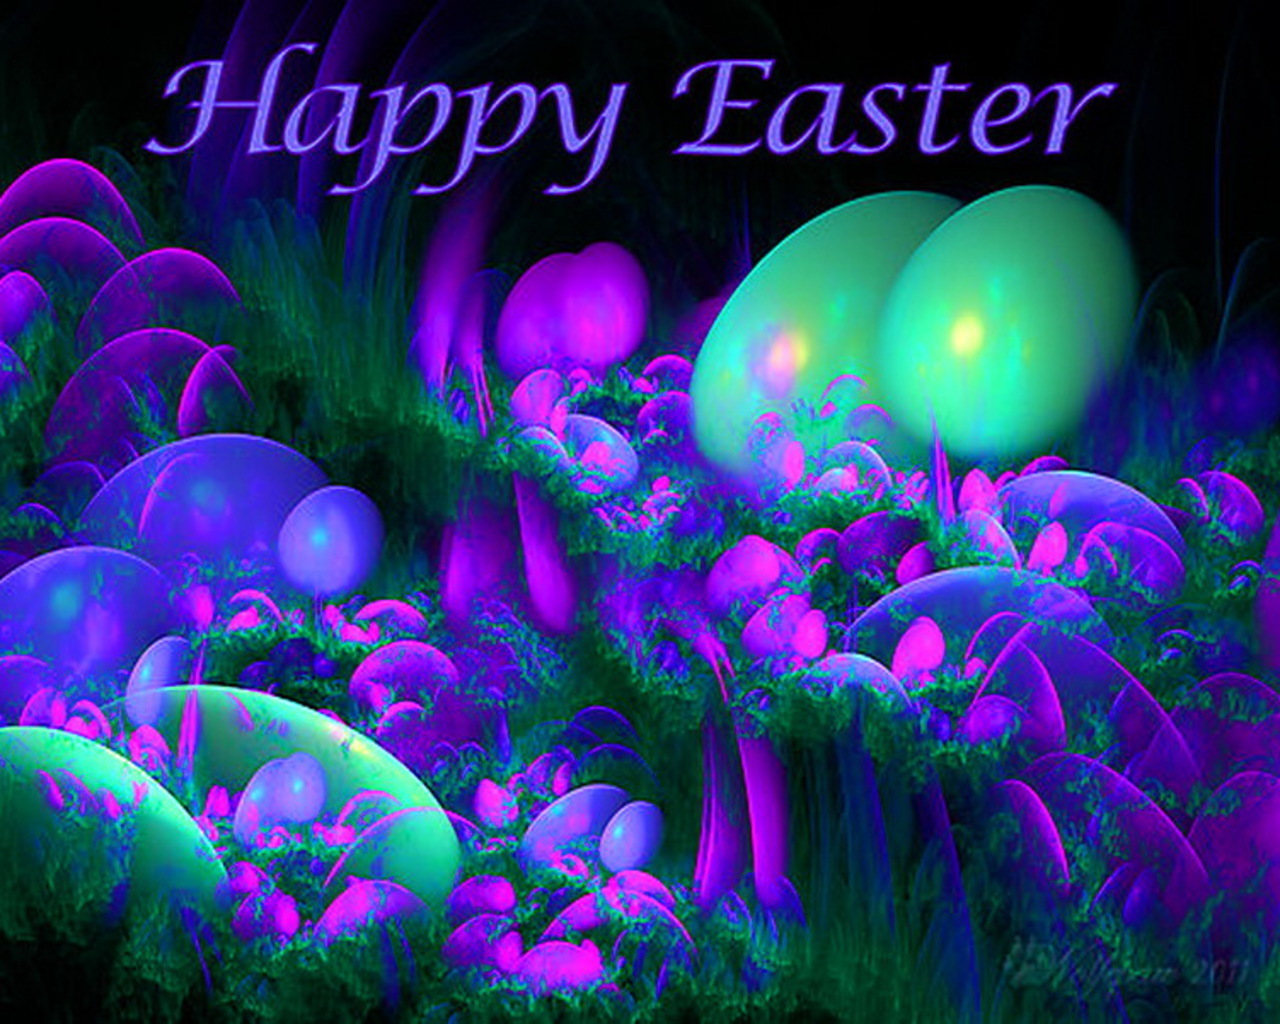 Have a Fantastical Easter!